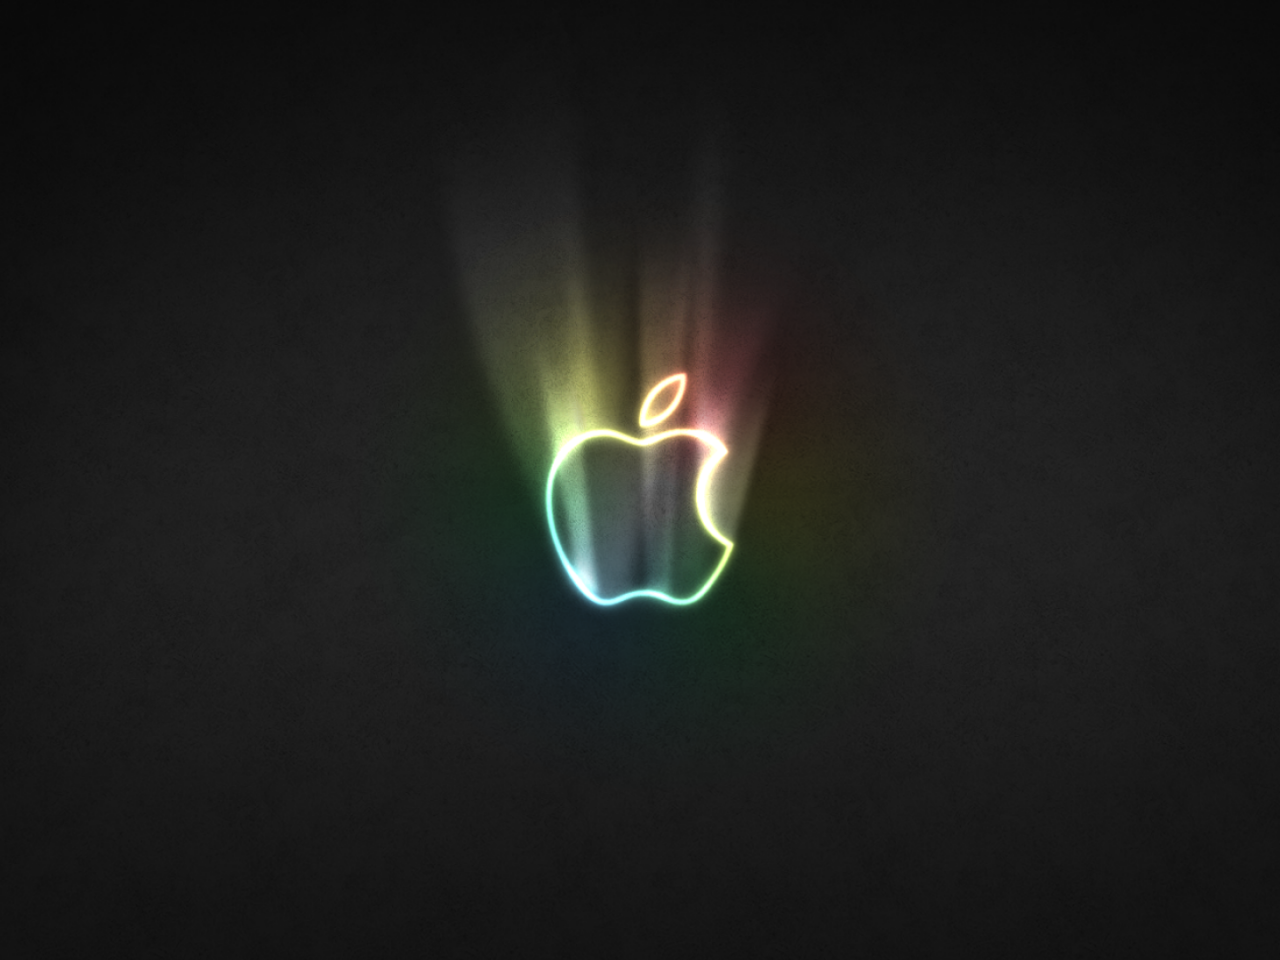 Apple glowing logo wallpaper - HD Wallpapers